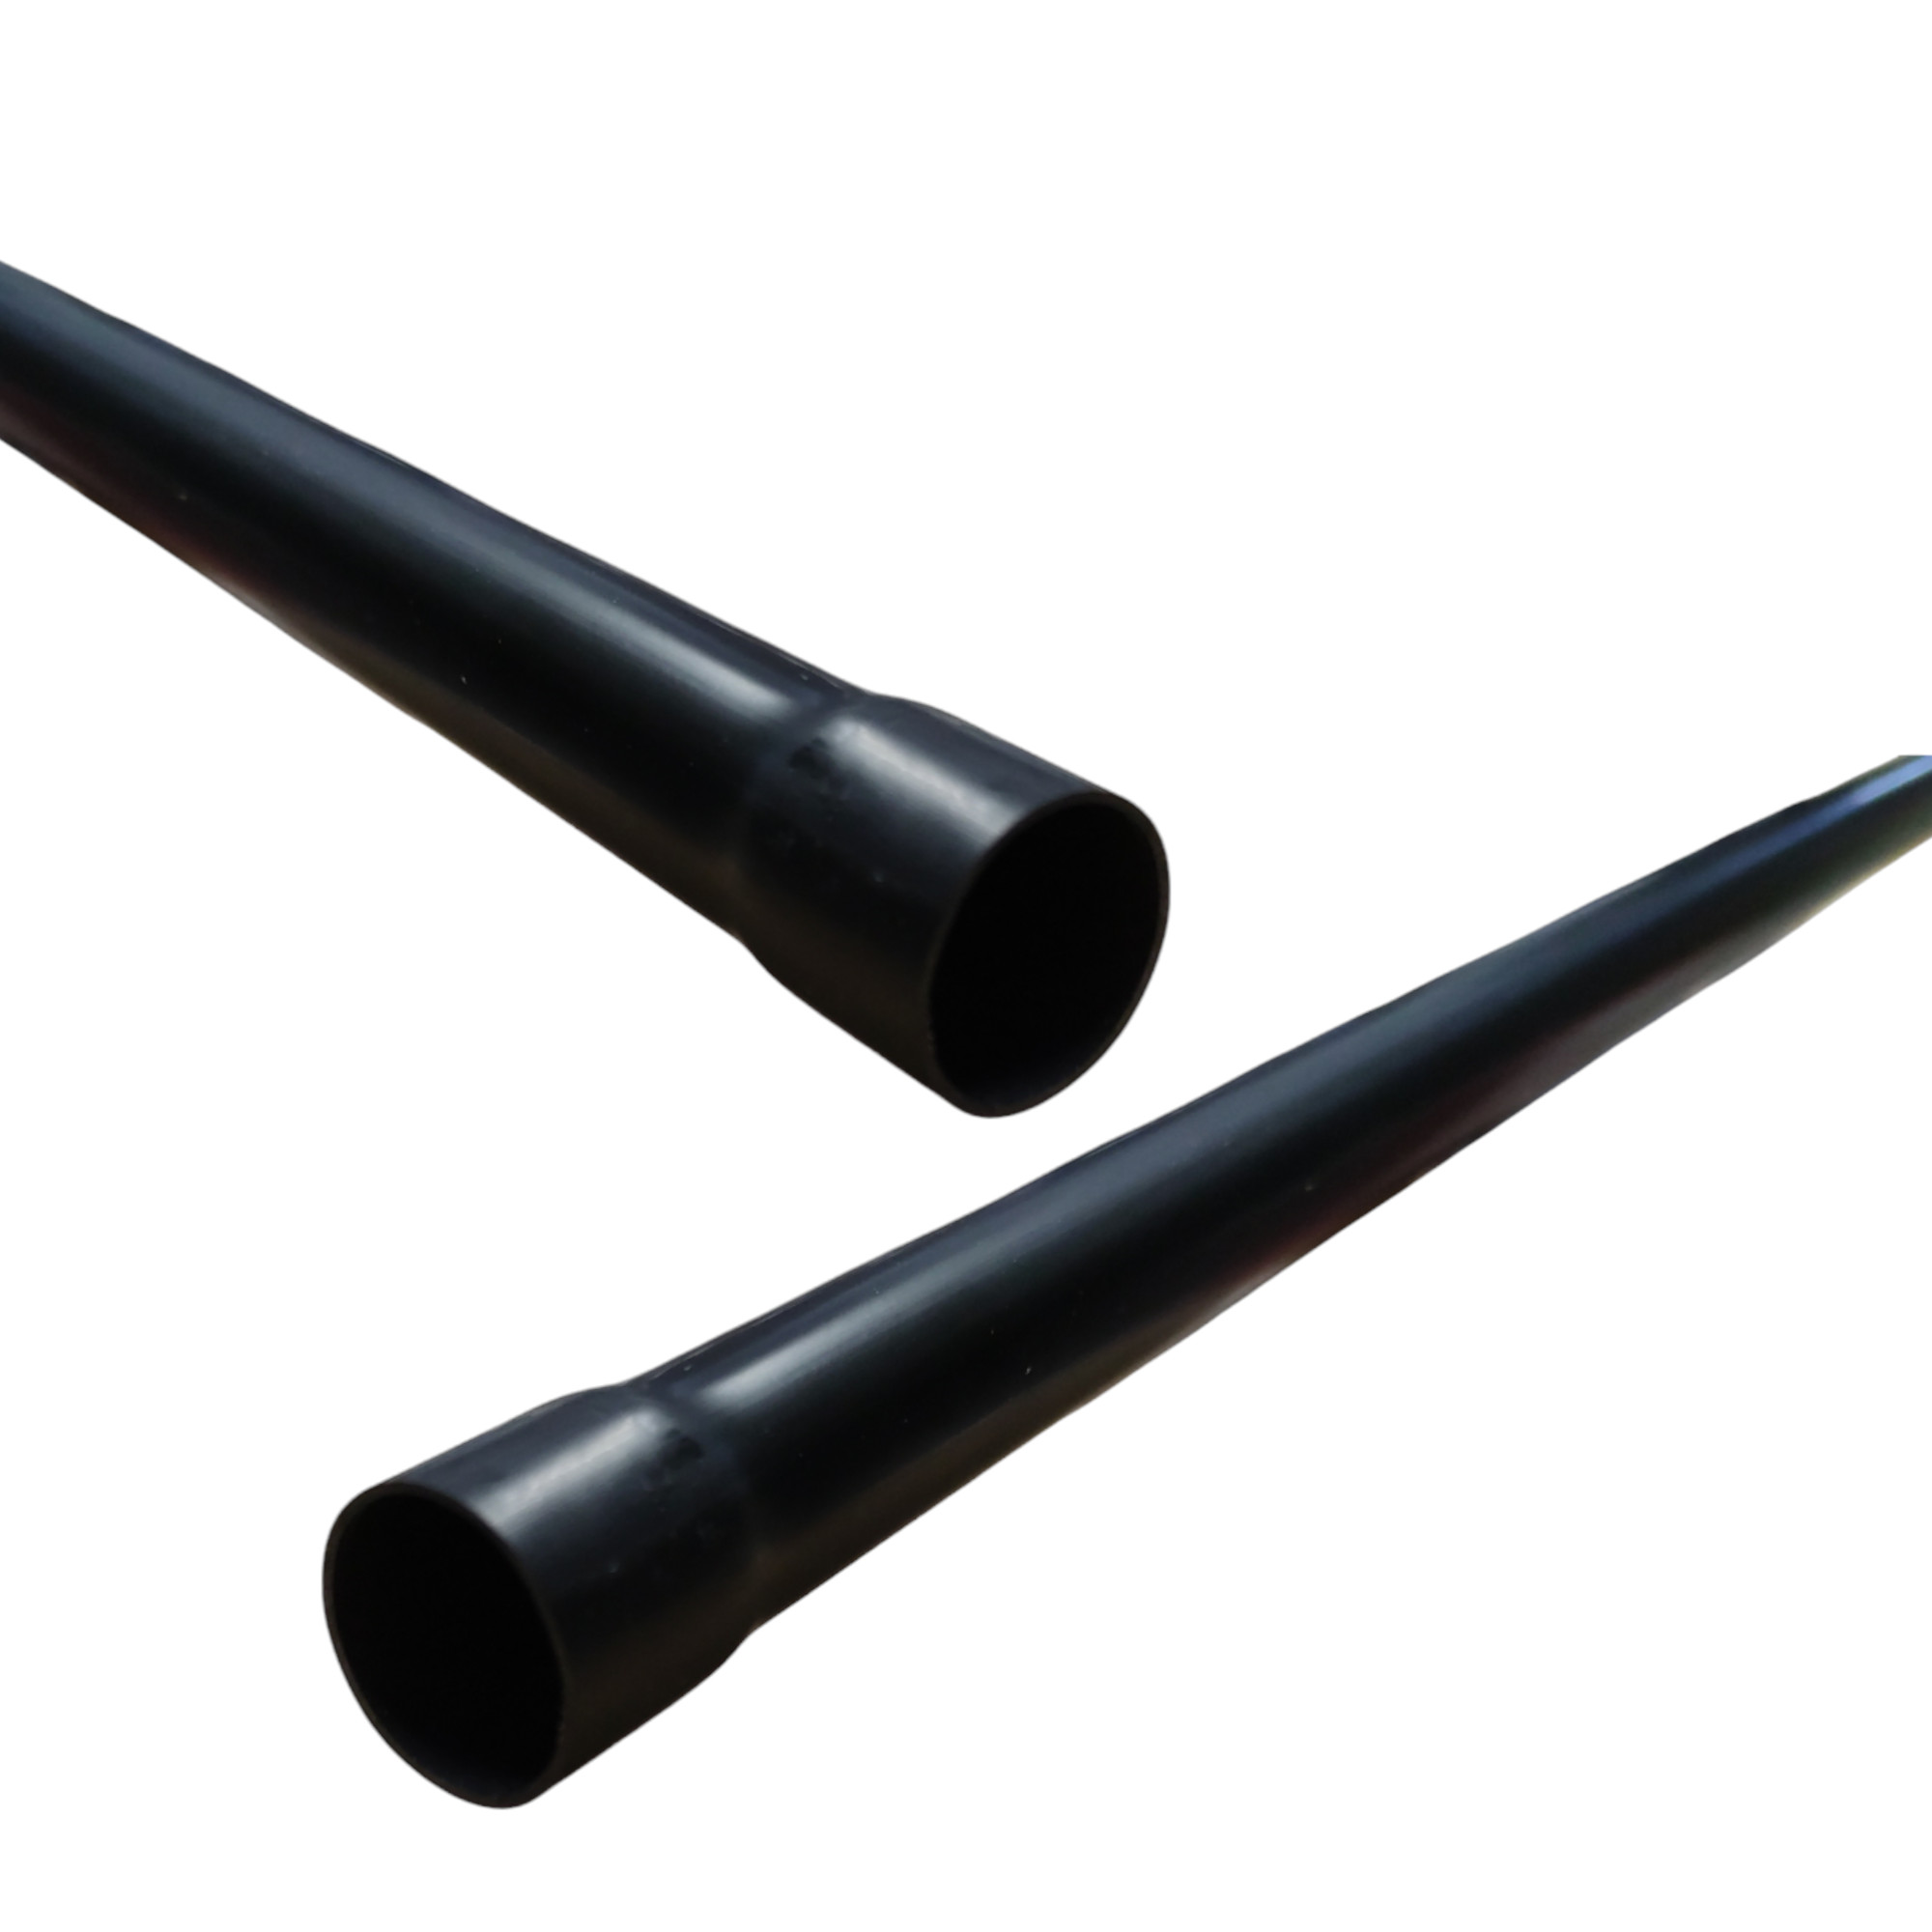 Elektrorohr Starre schwarze Elektroinstallationsrohr mit Kelchform Durchmesser 20mm 2M.